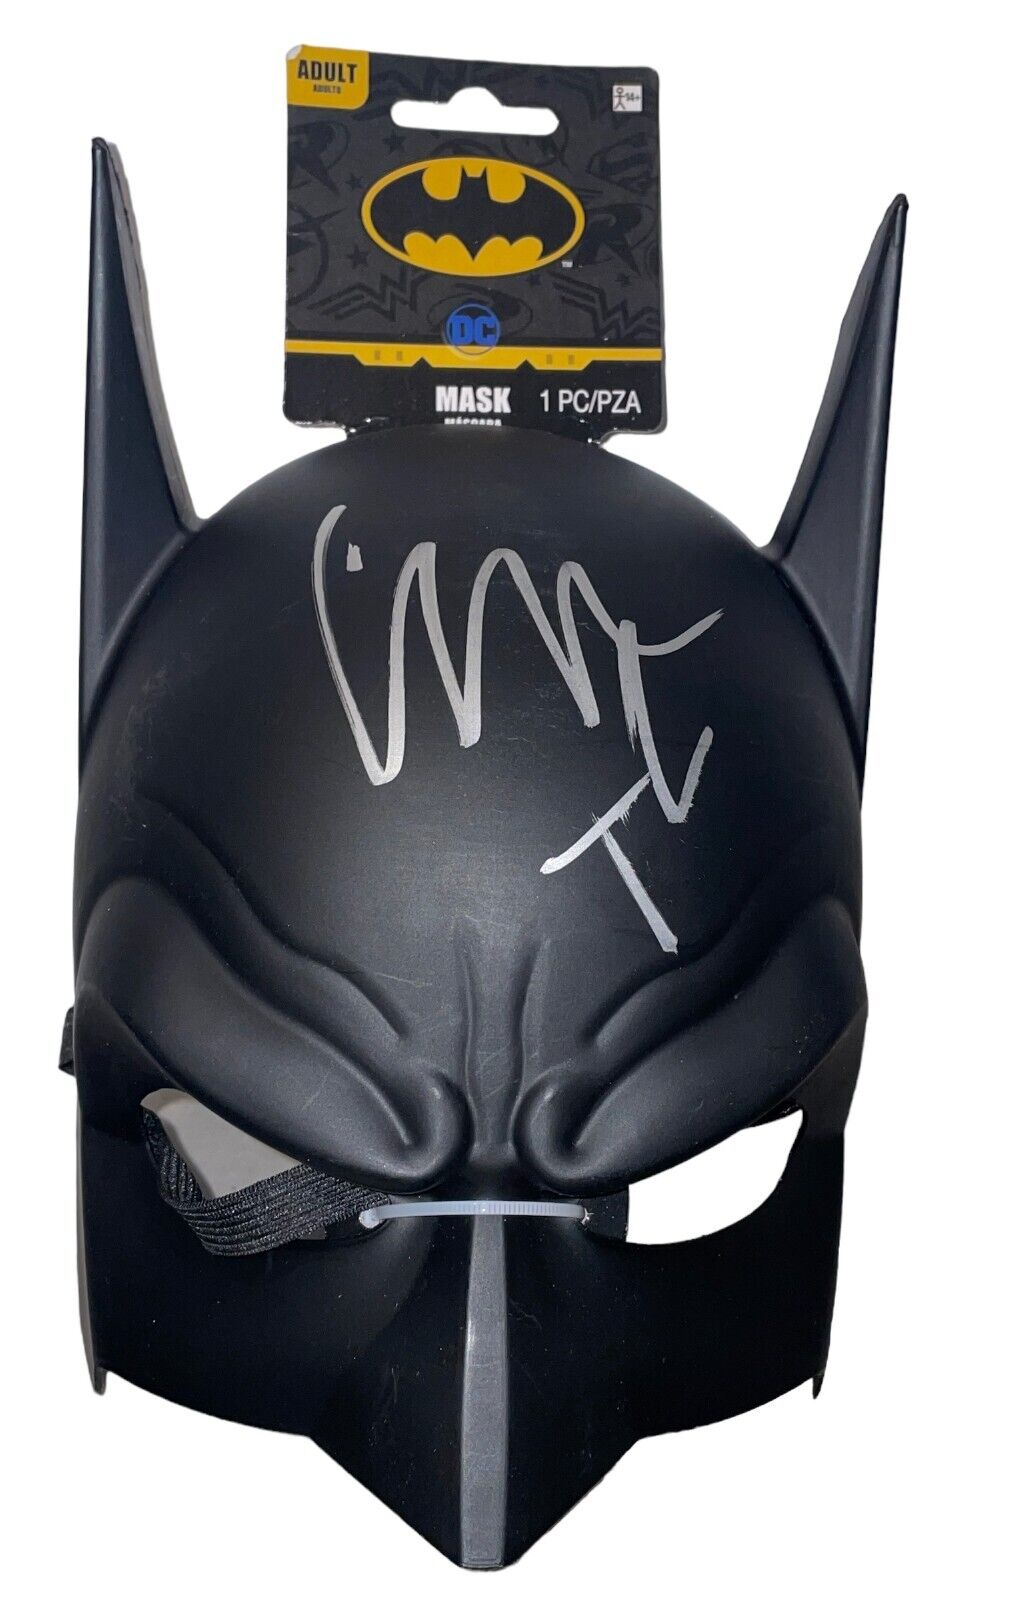 Christian Bale Signed Autograph The Dark Knight Batman MASK DC Beckett BAS COA